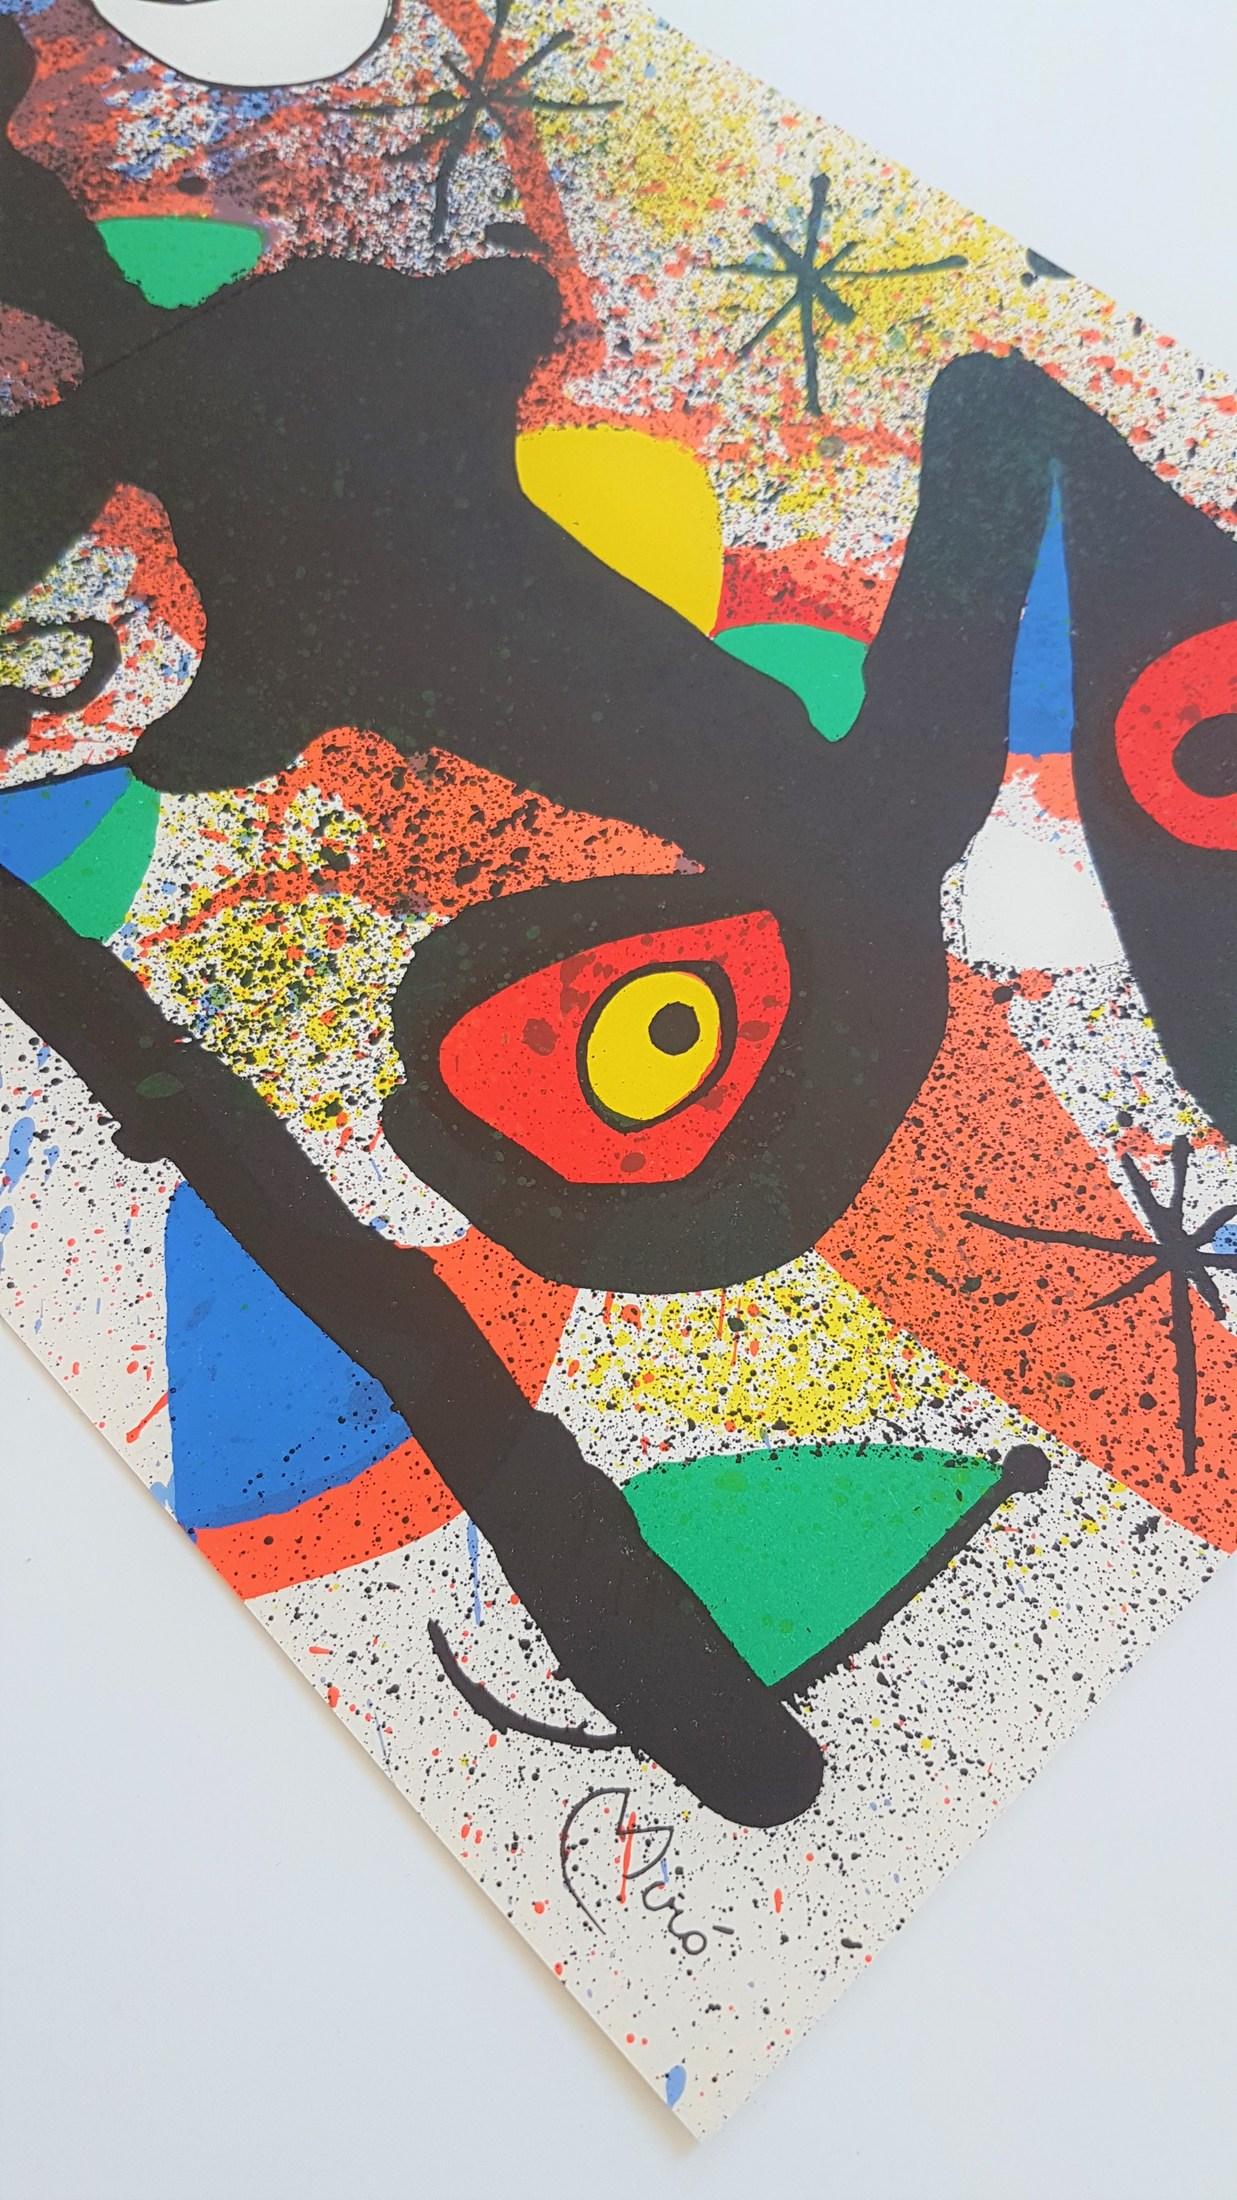 Ceramiques de Miro et Artigas (I) - Modern Print by Joan Miró